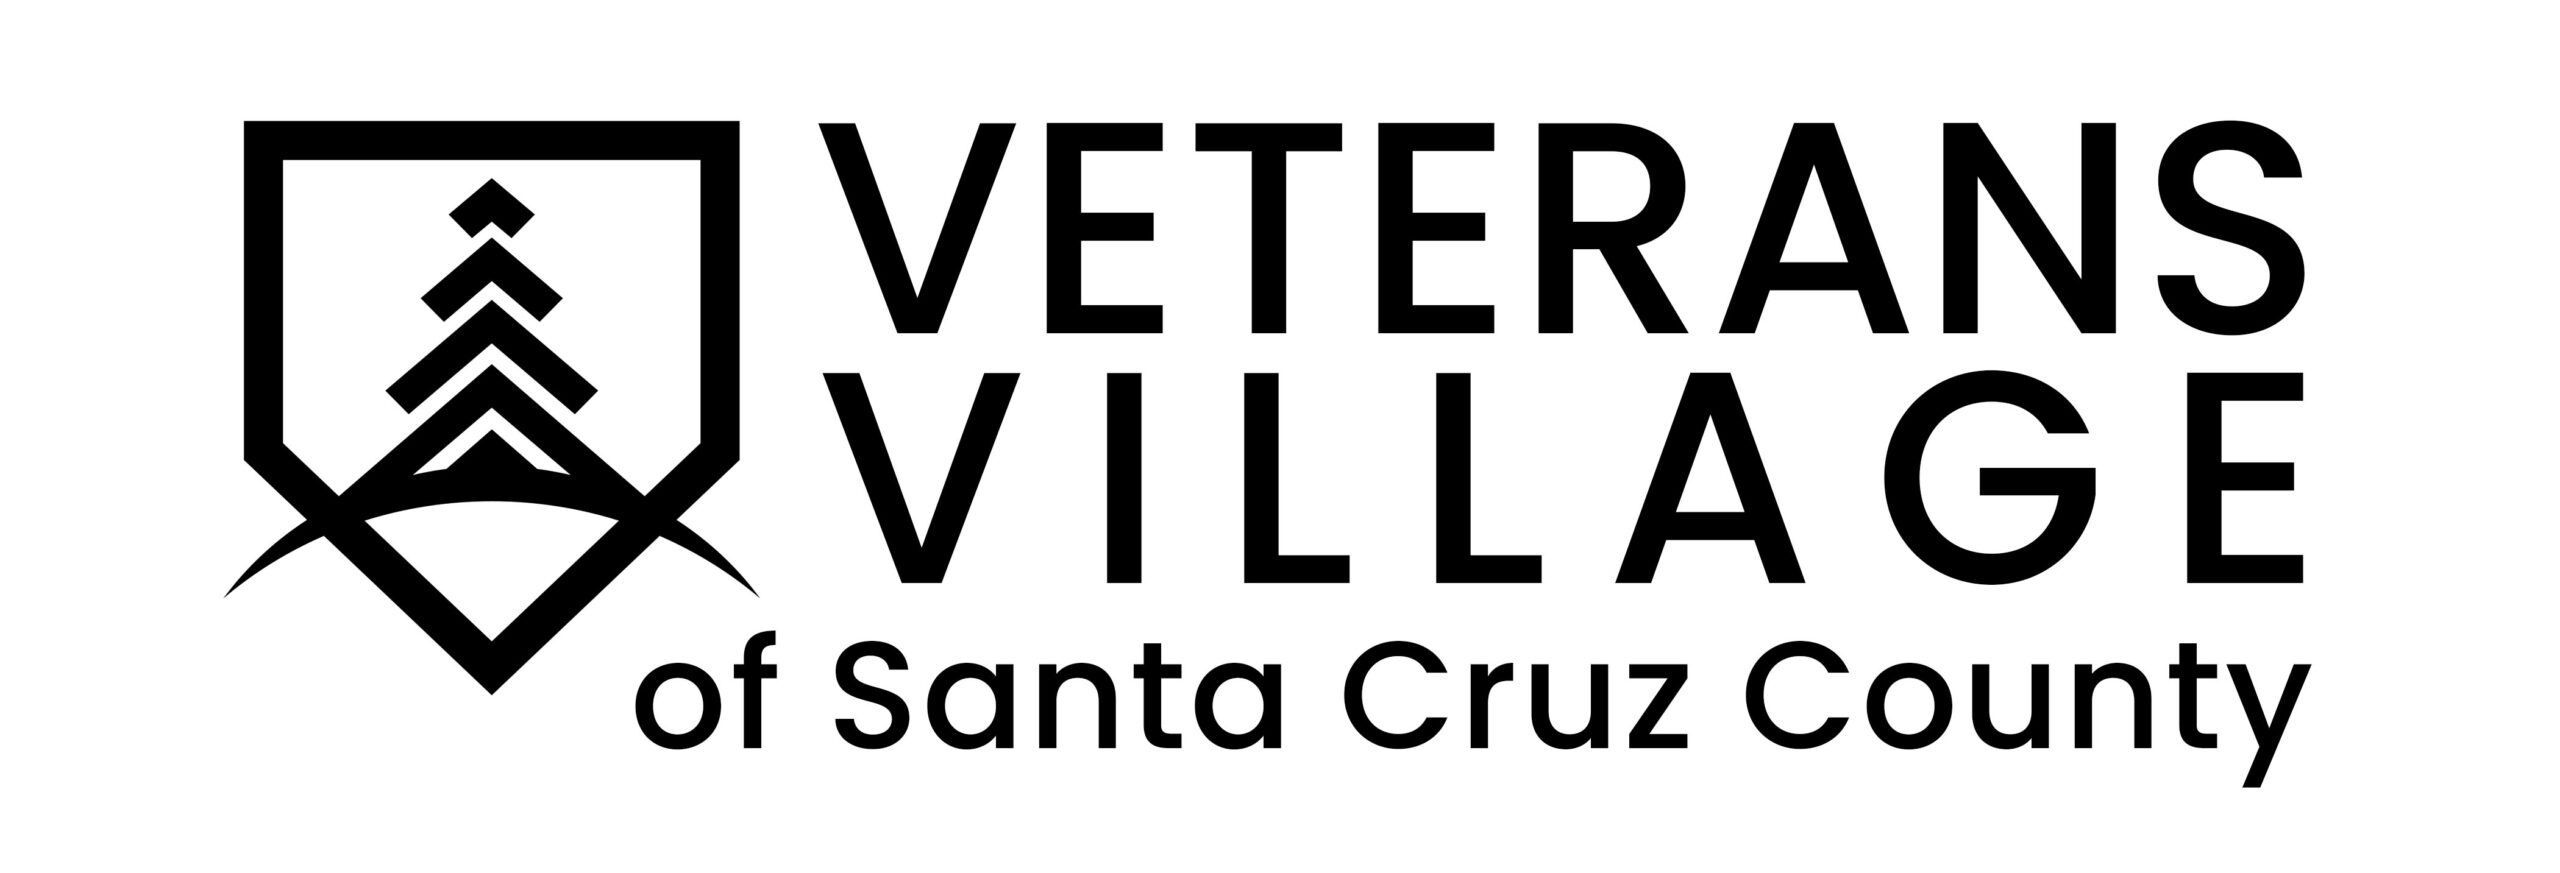 Veterans Village